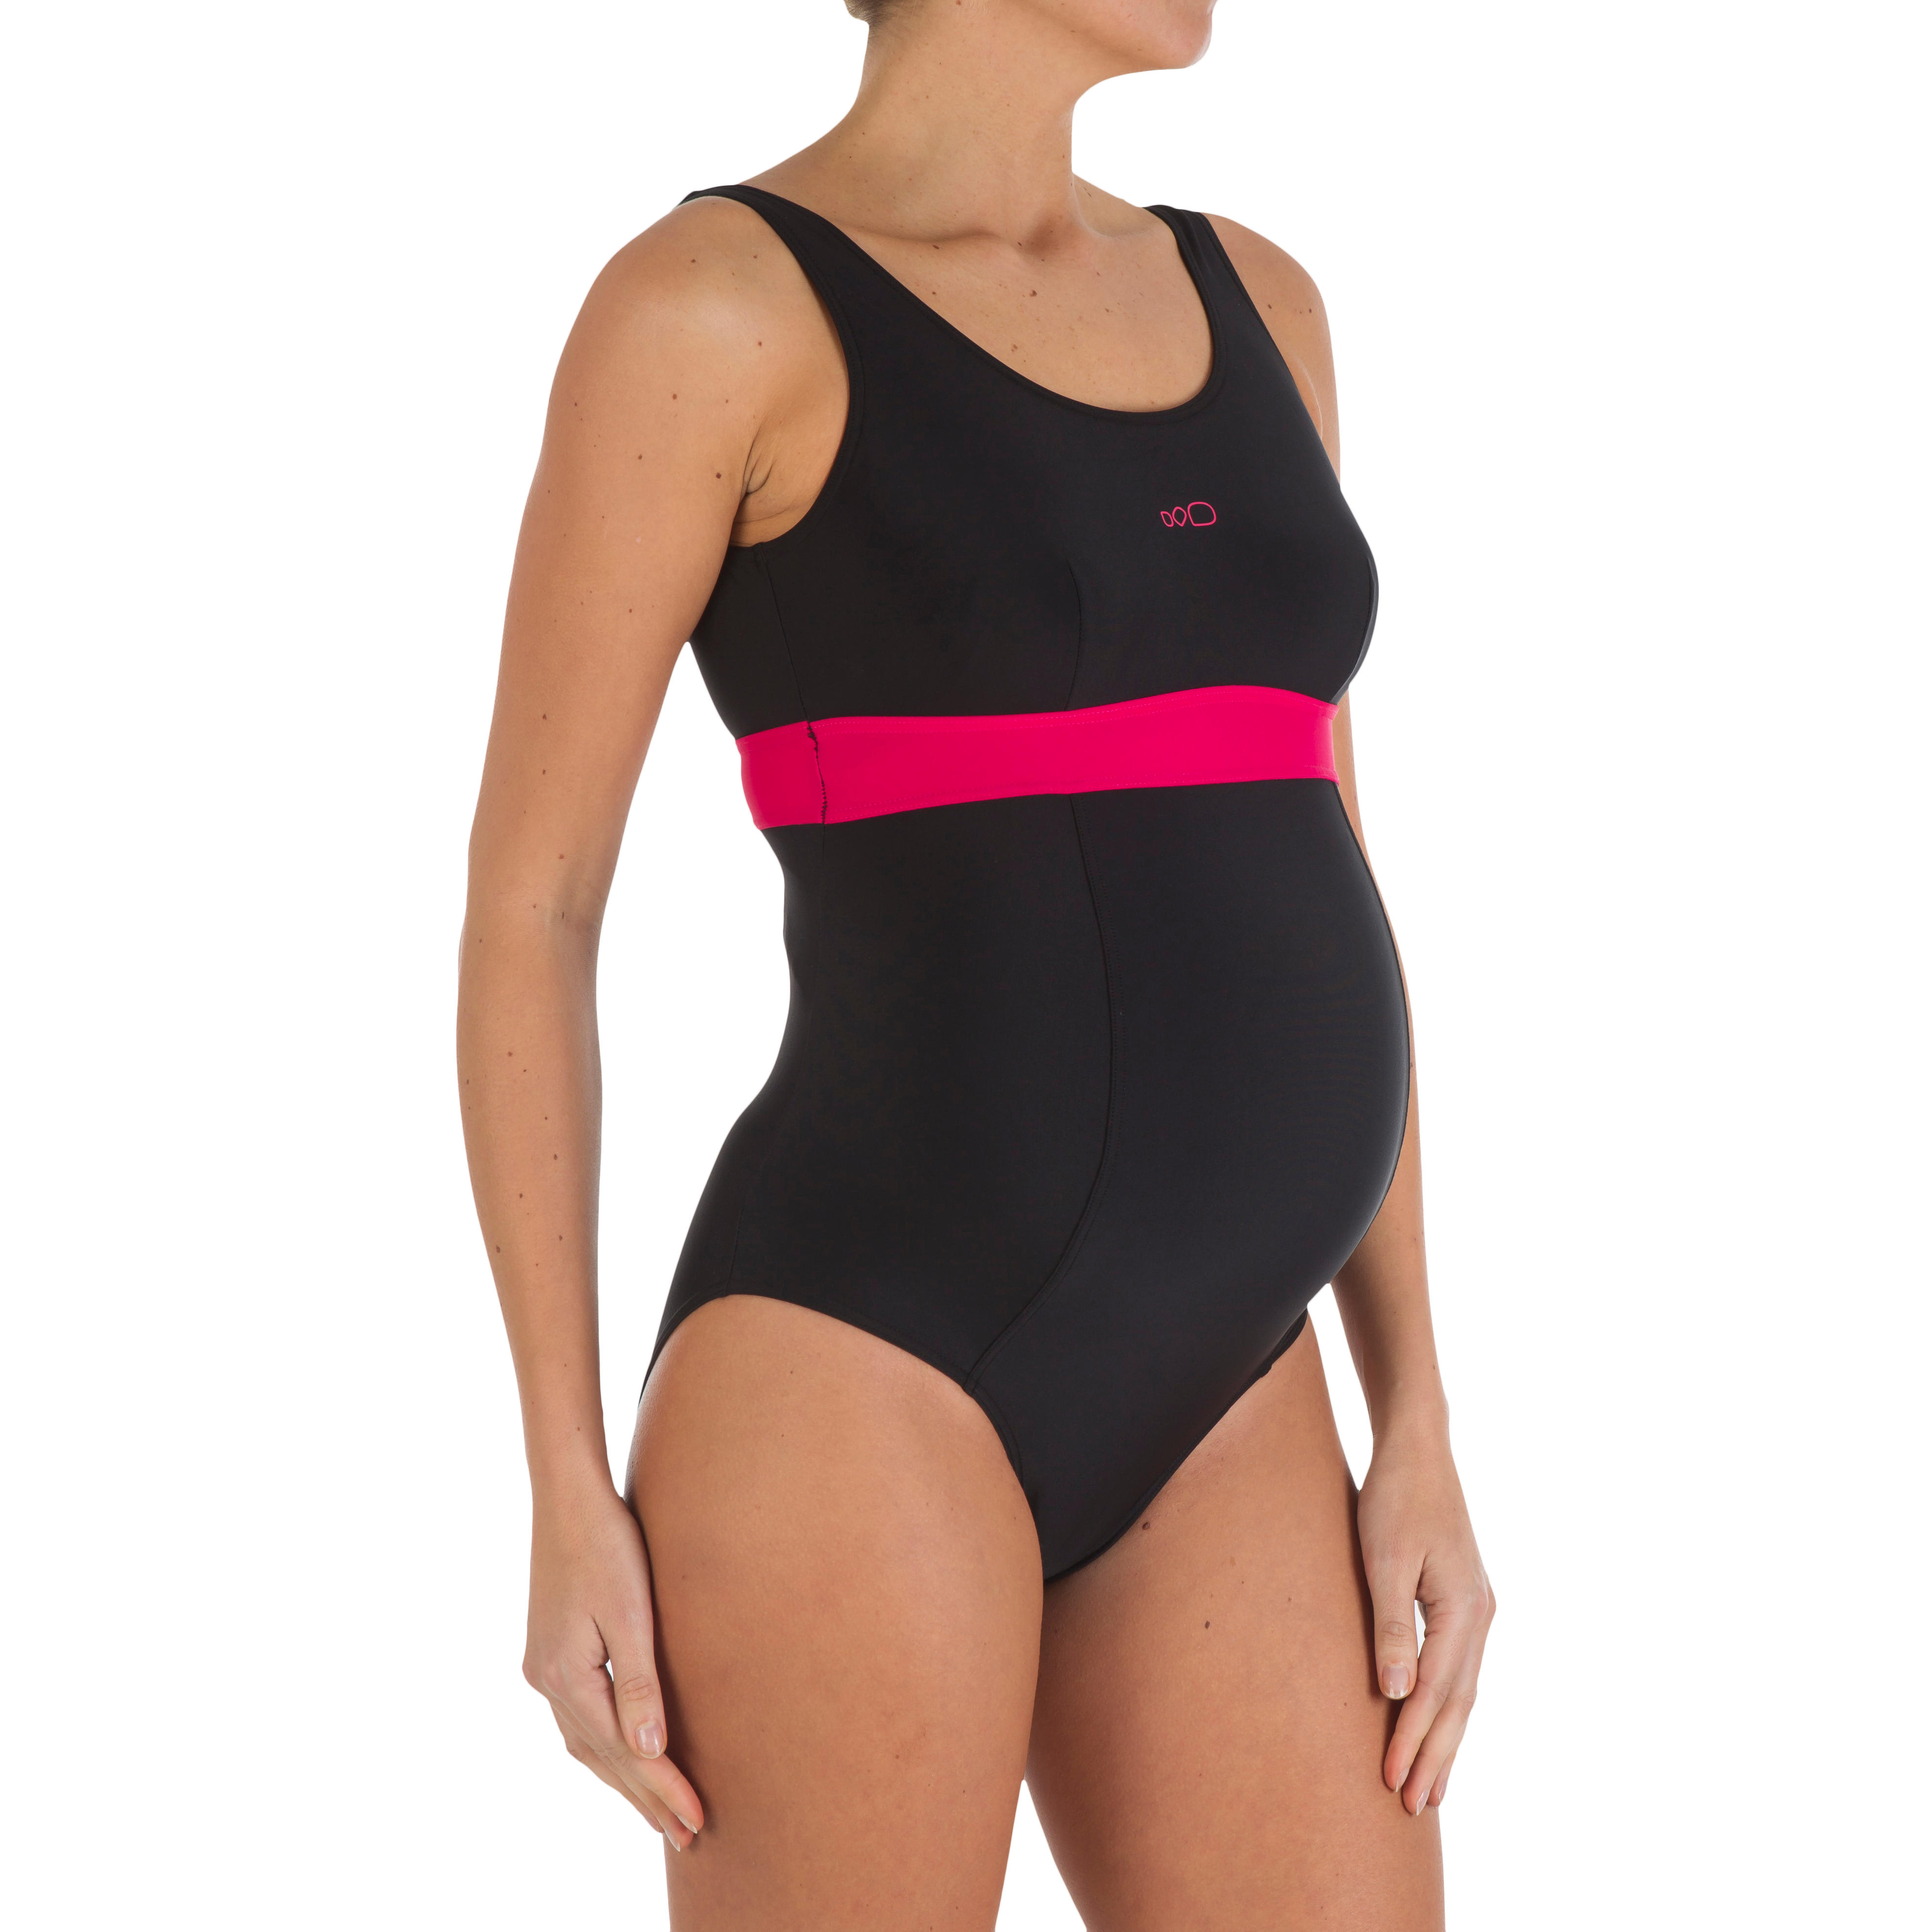 decathlon swimwear for women